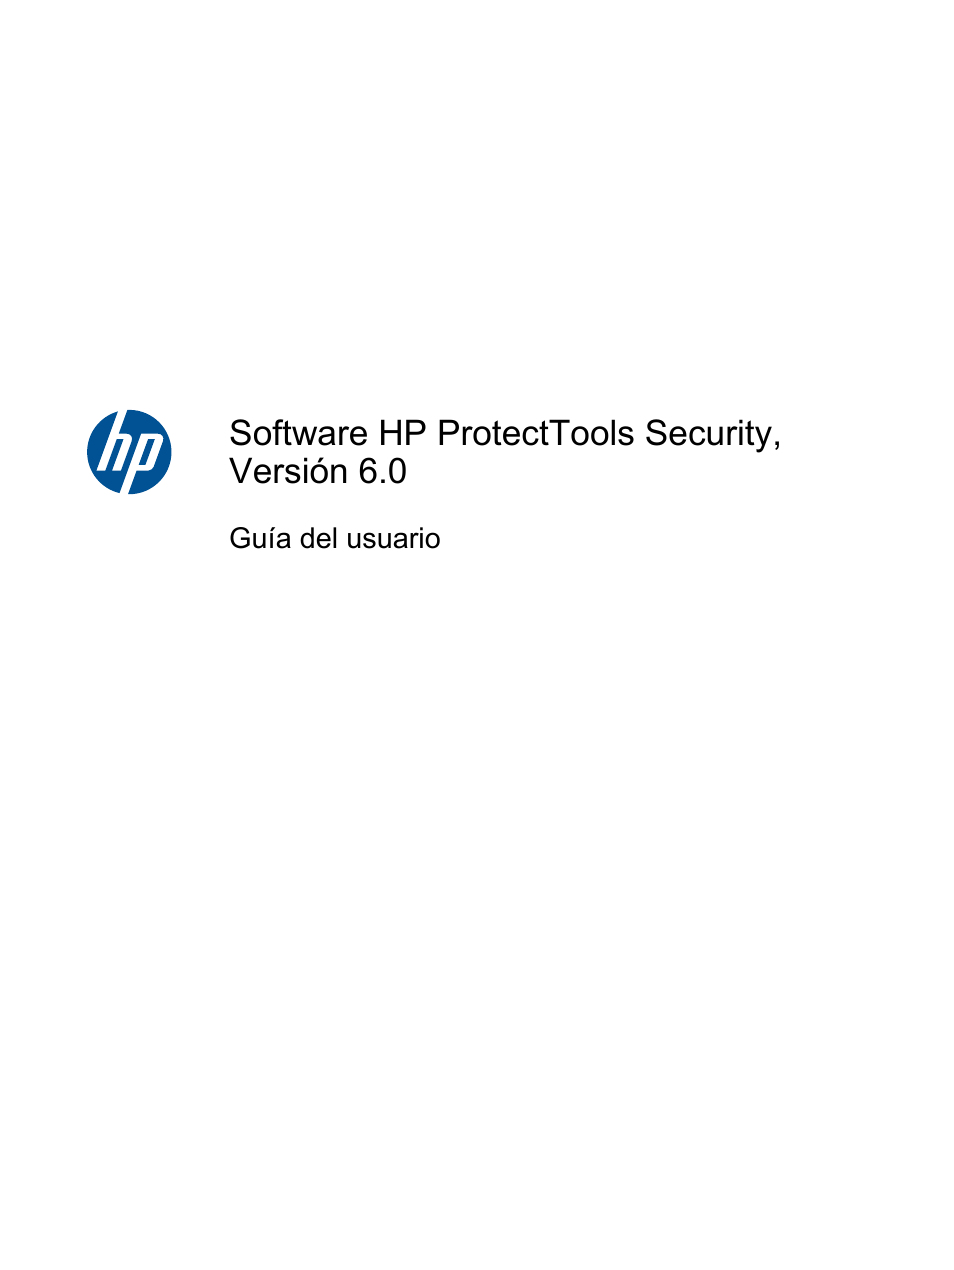 HP Software HP ProtectTools Security, Versión 6.0 (Guía del usuario) Manual del usuario | Páginas: 80